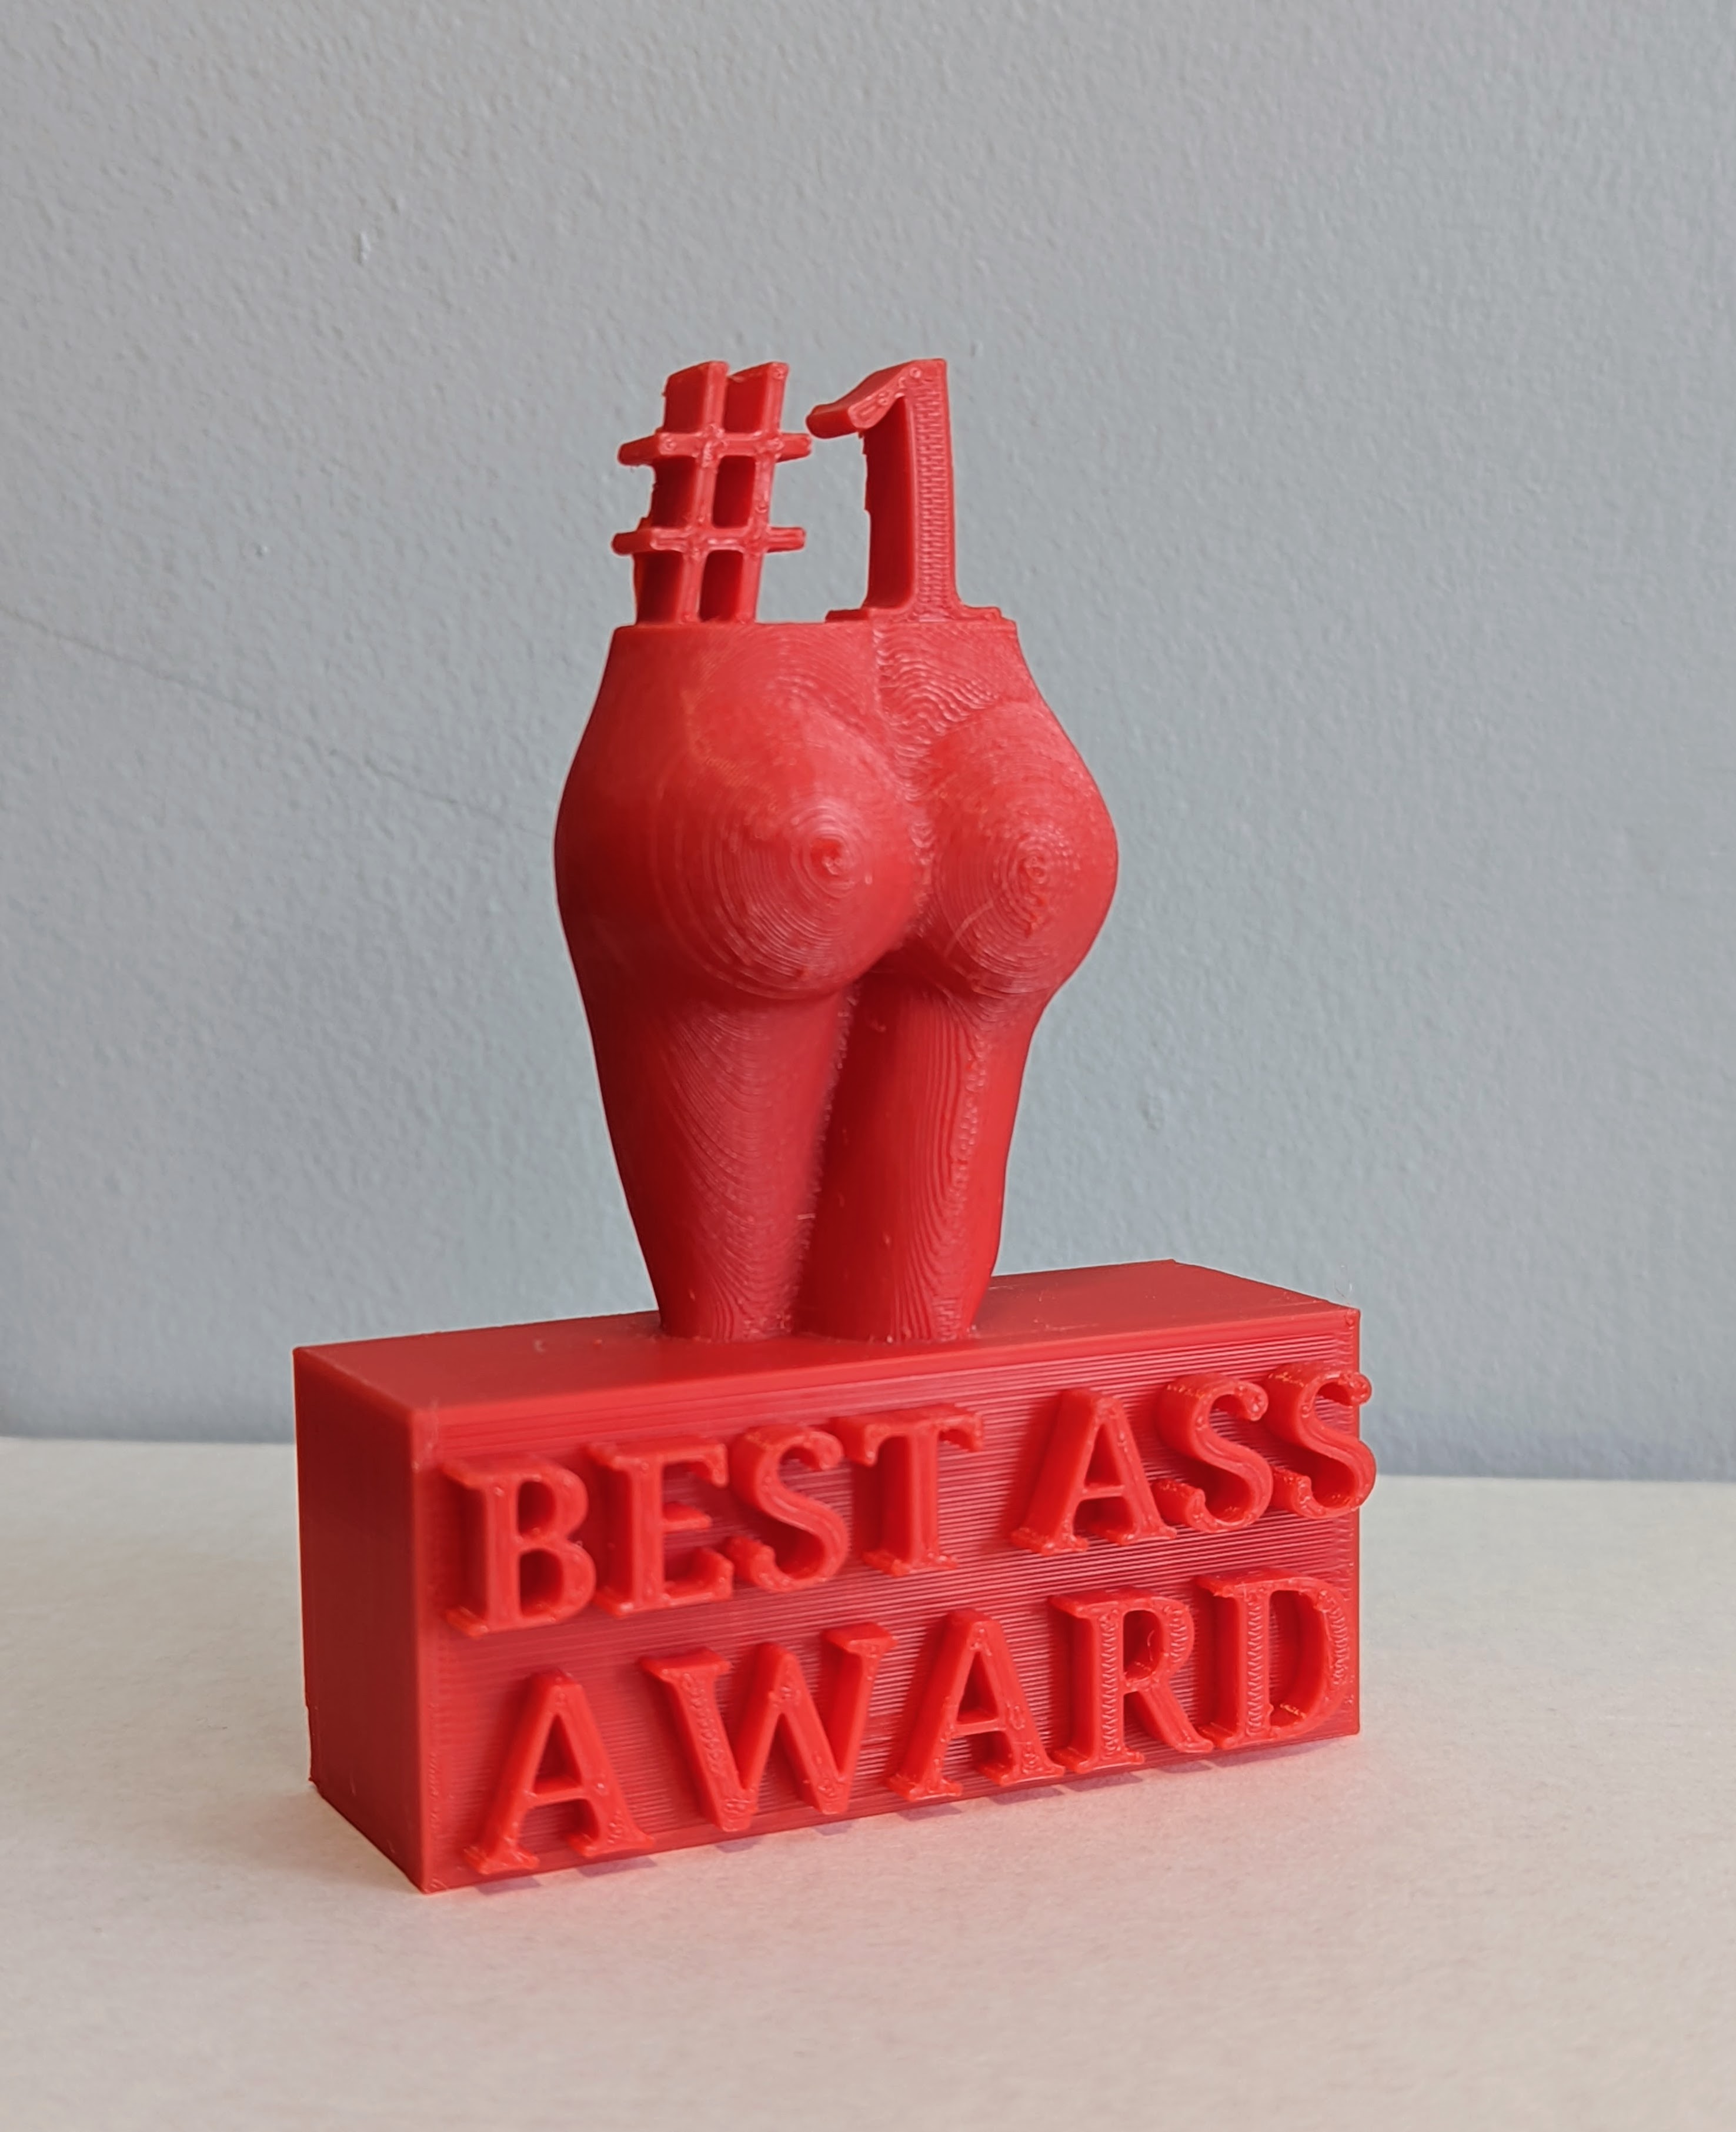 Best Ass Award Trophy